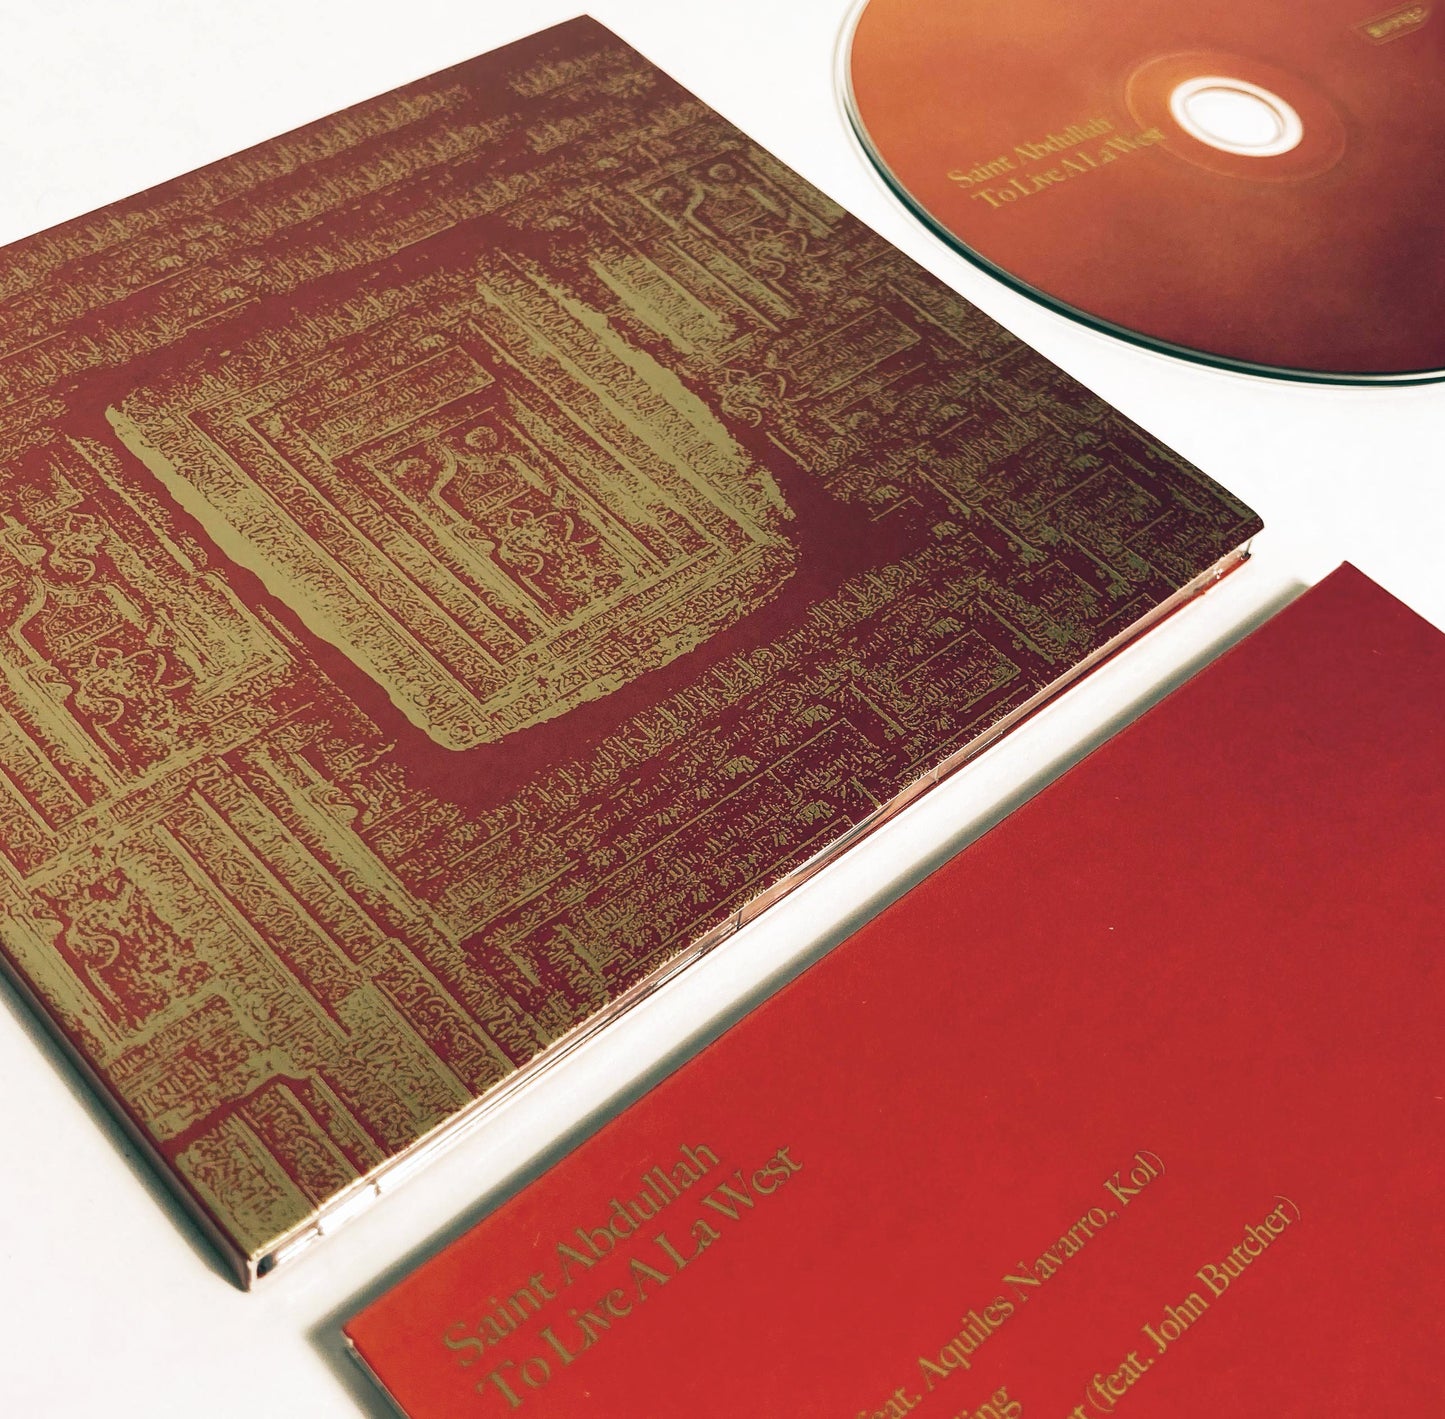 Saint Abdullah To Live A La West CD/Tape/Shirt BUNDLE